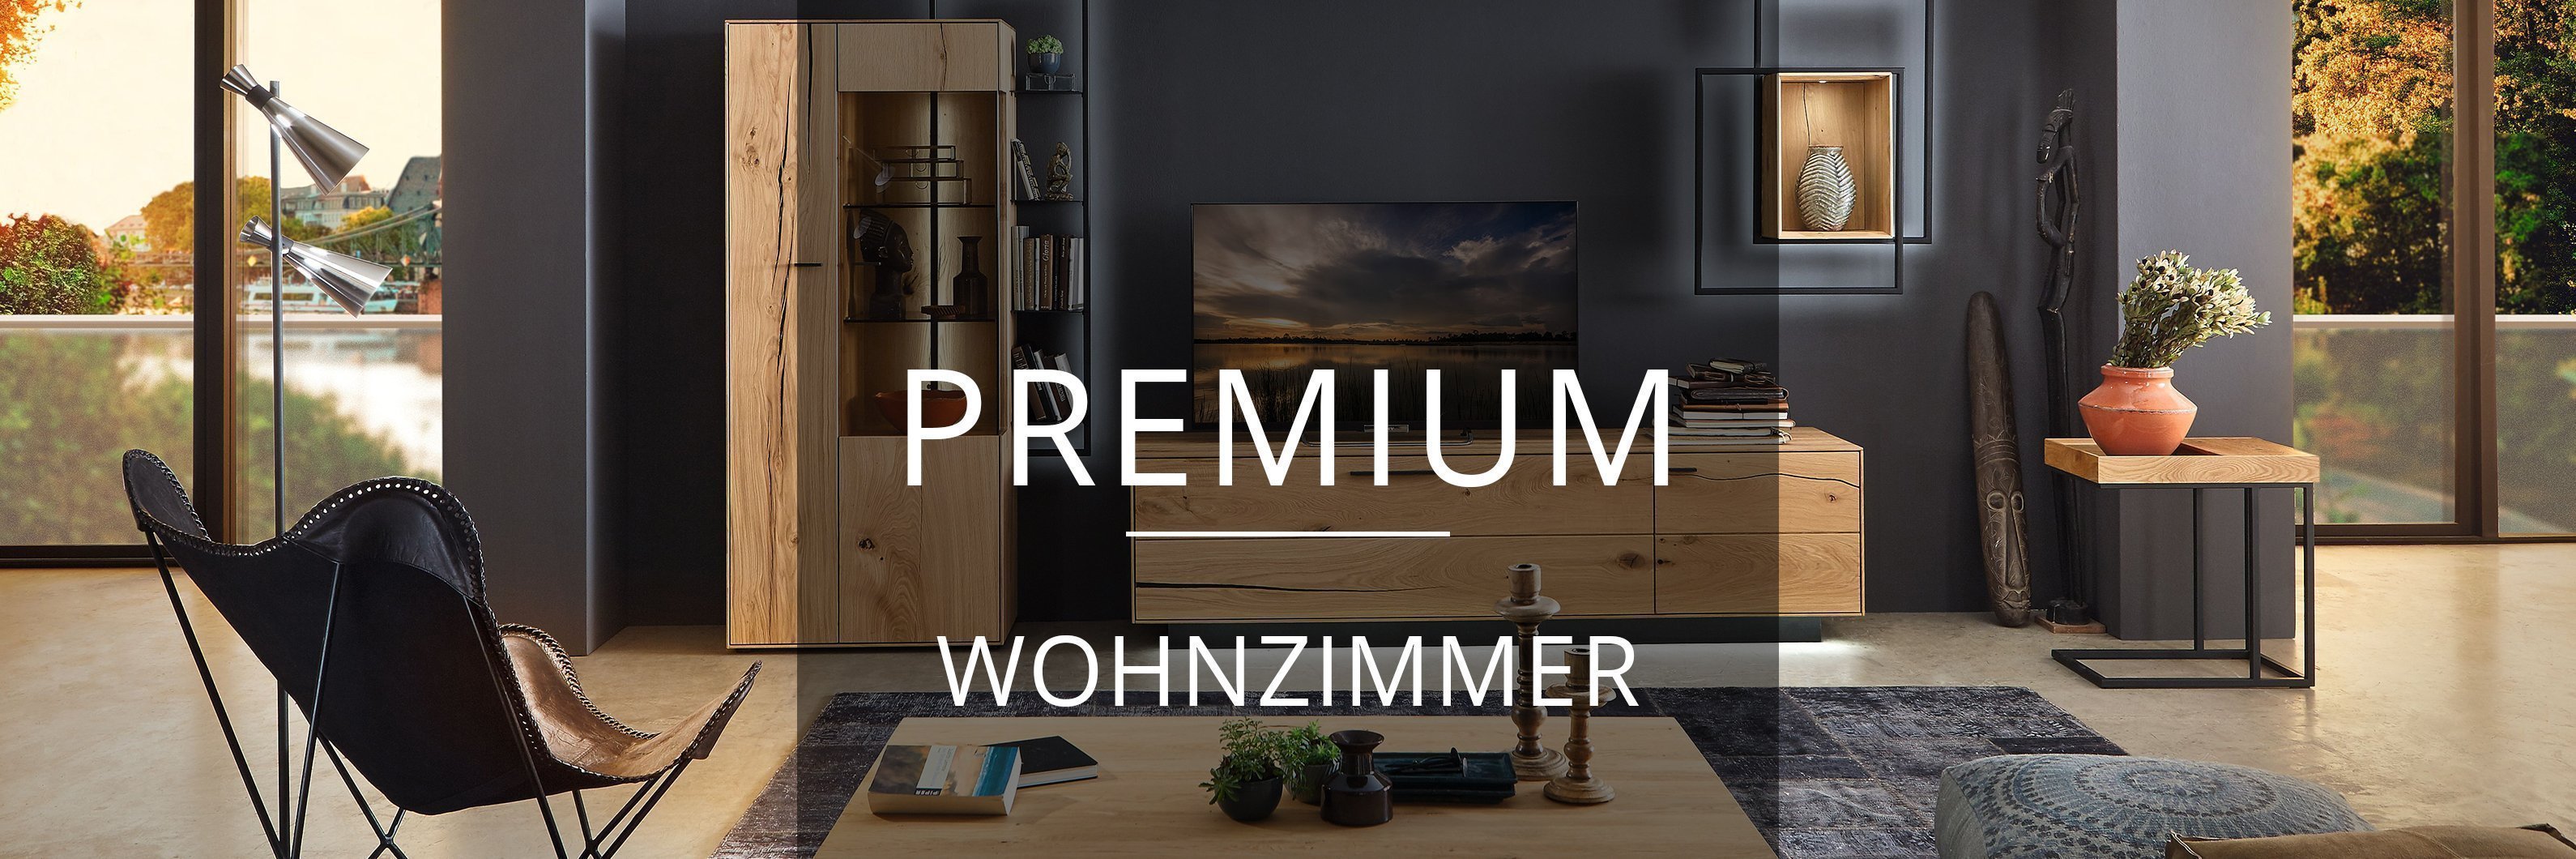 Premium Wohnzimmer